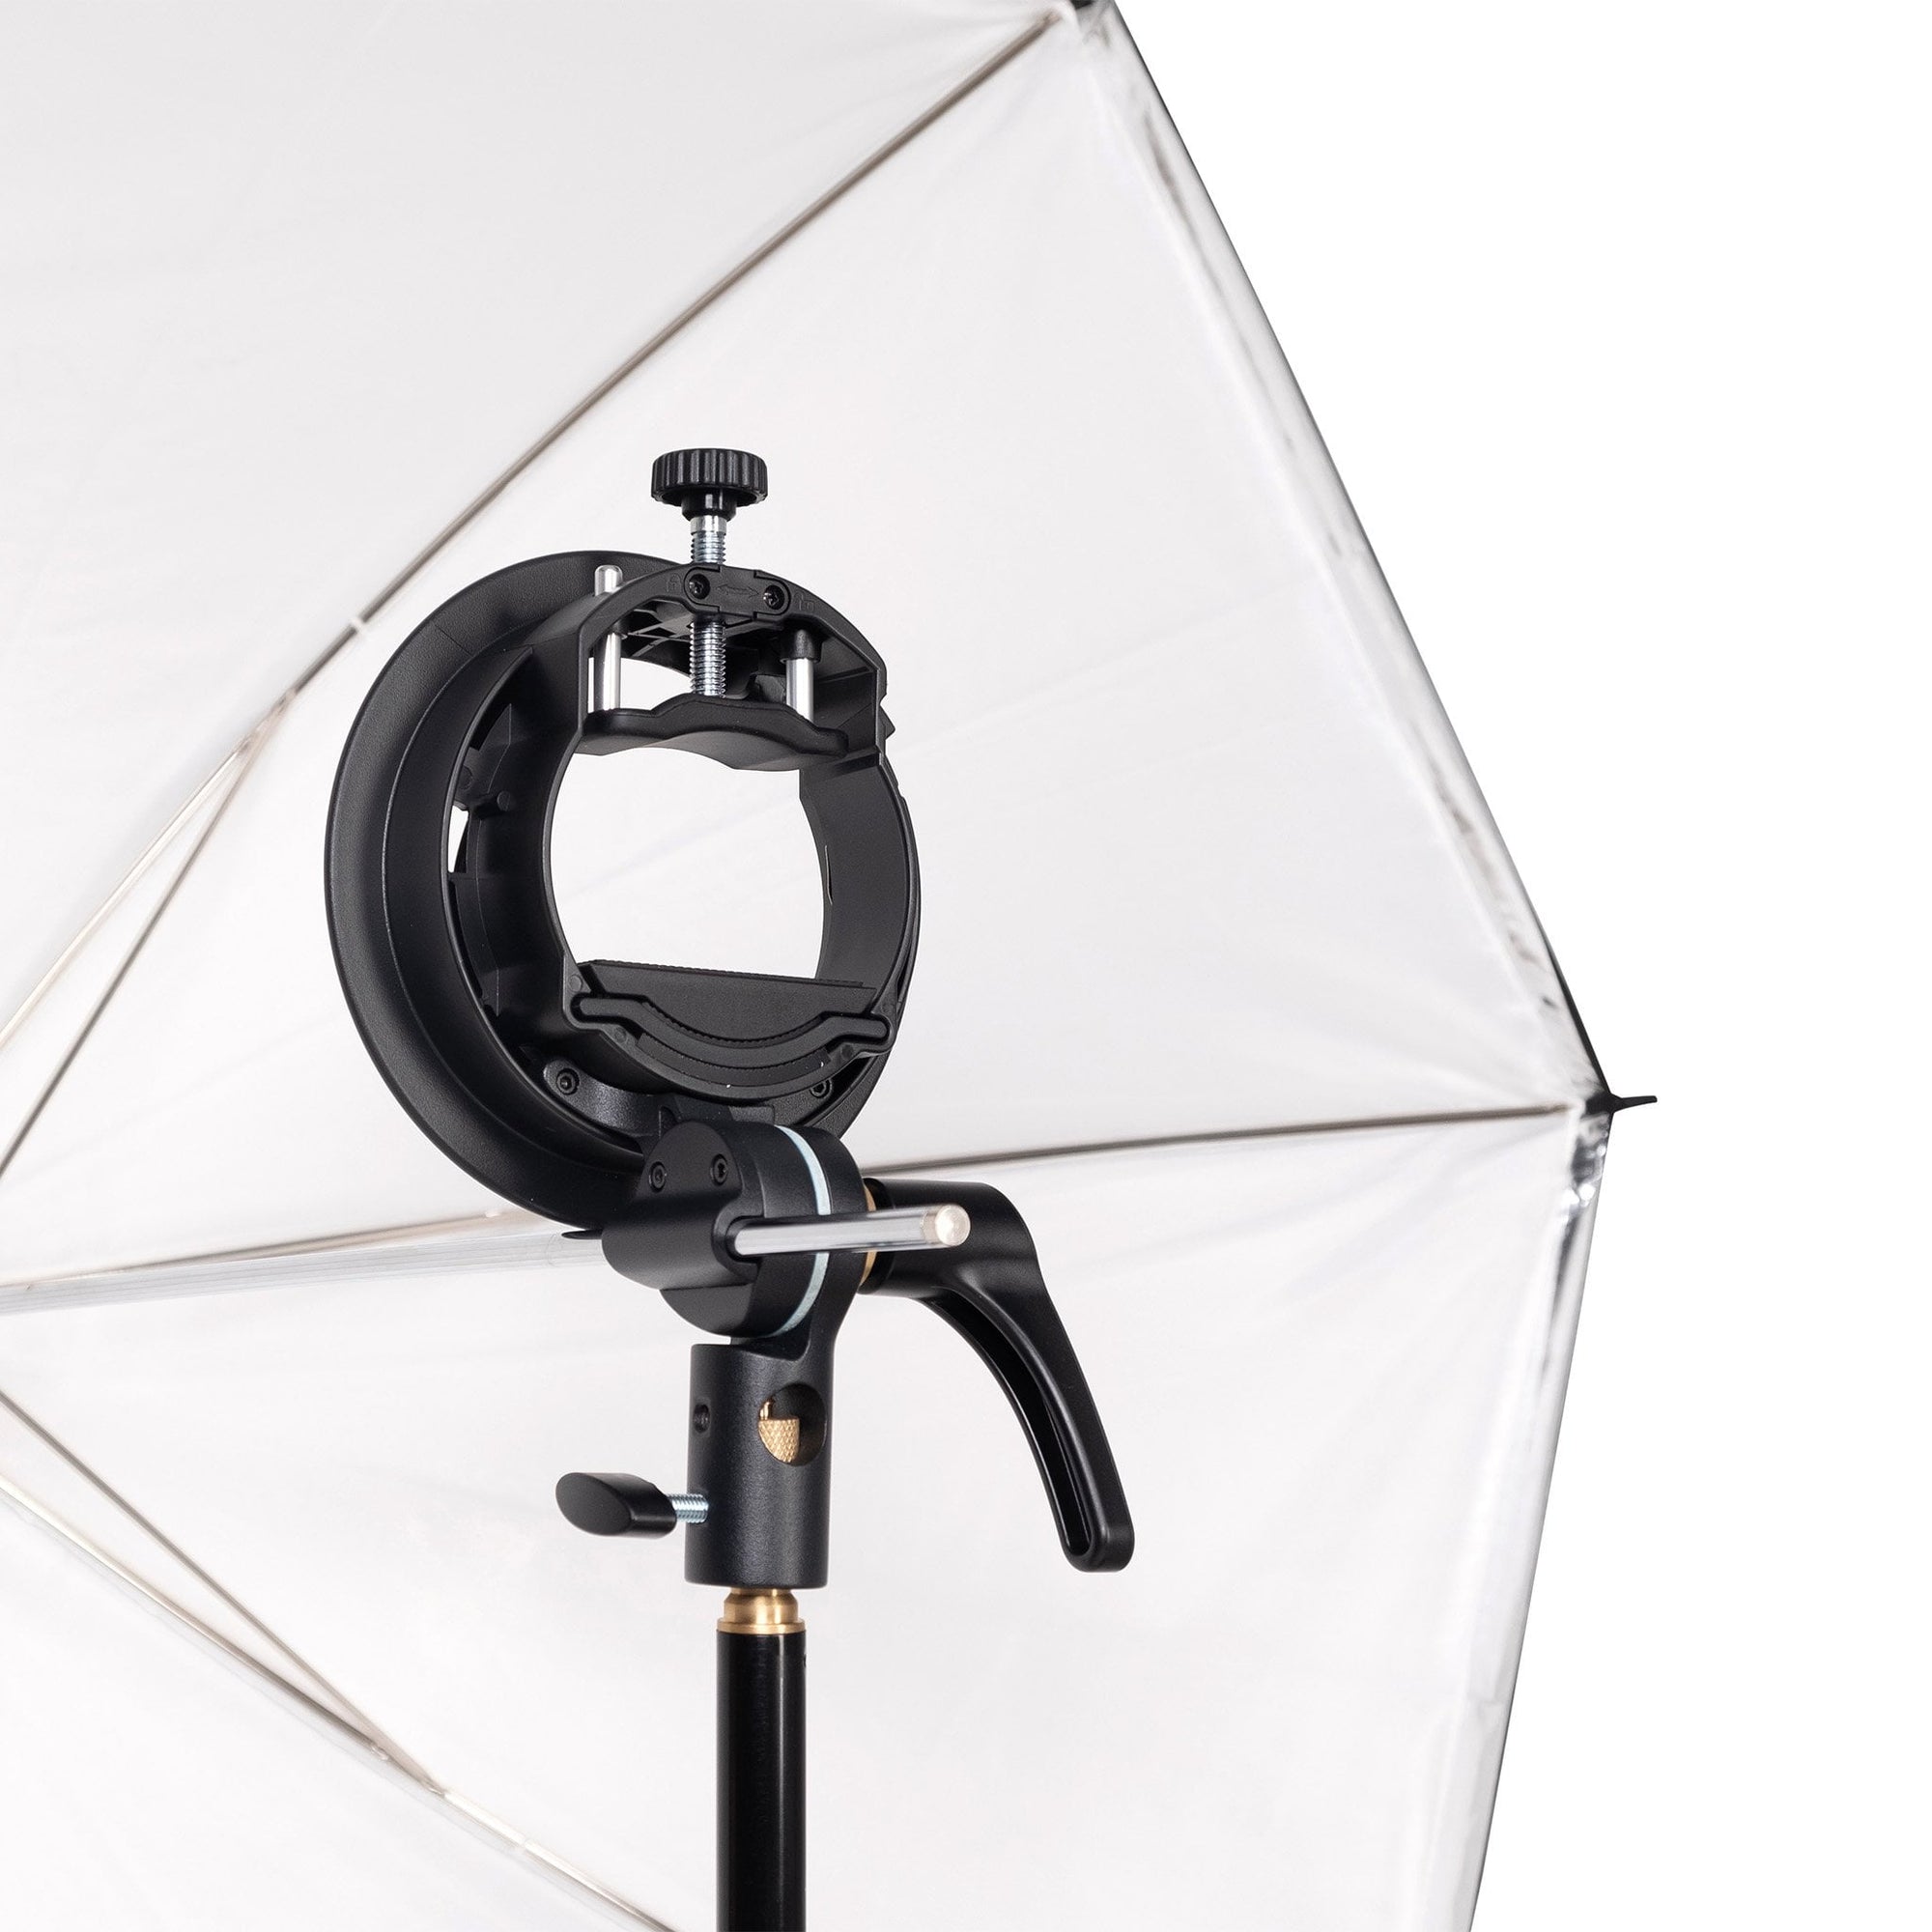 Strobepro Speedlite Flash Umbrella Kit - Single